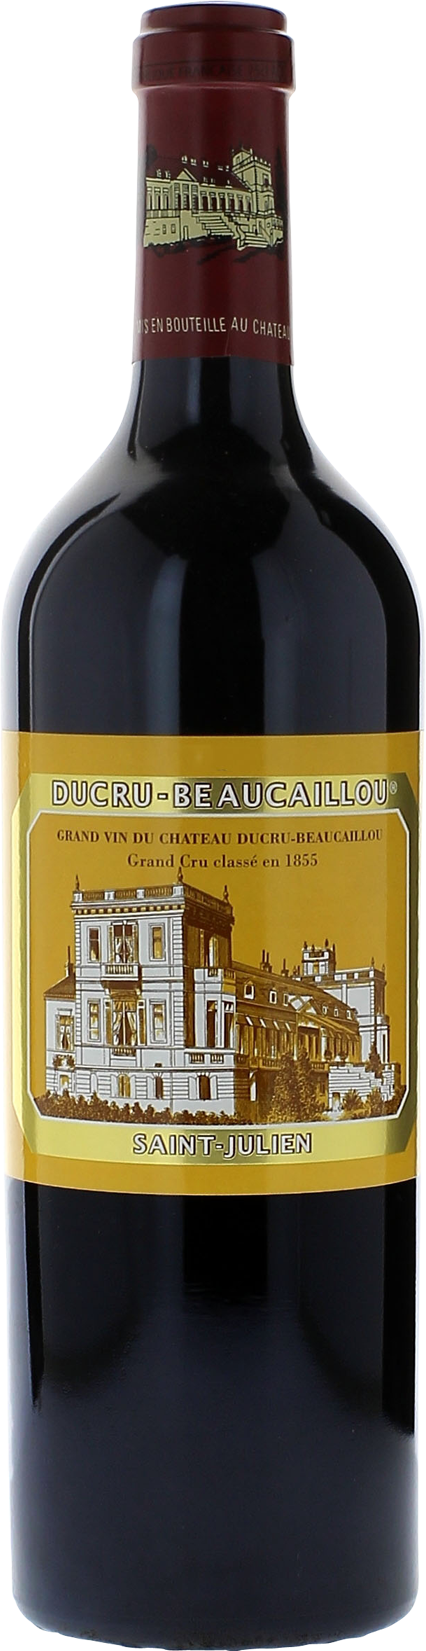 Ducru Beaucaillou 1998